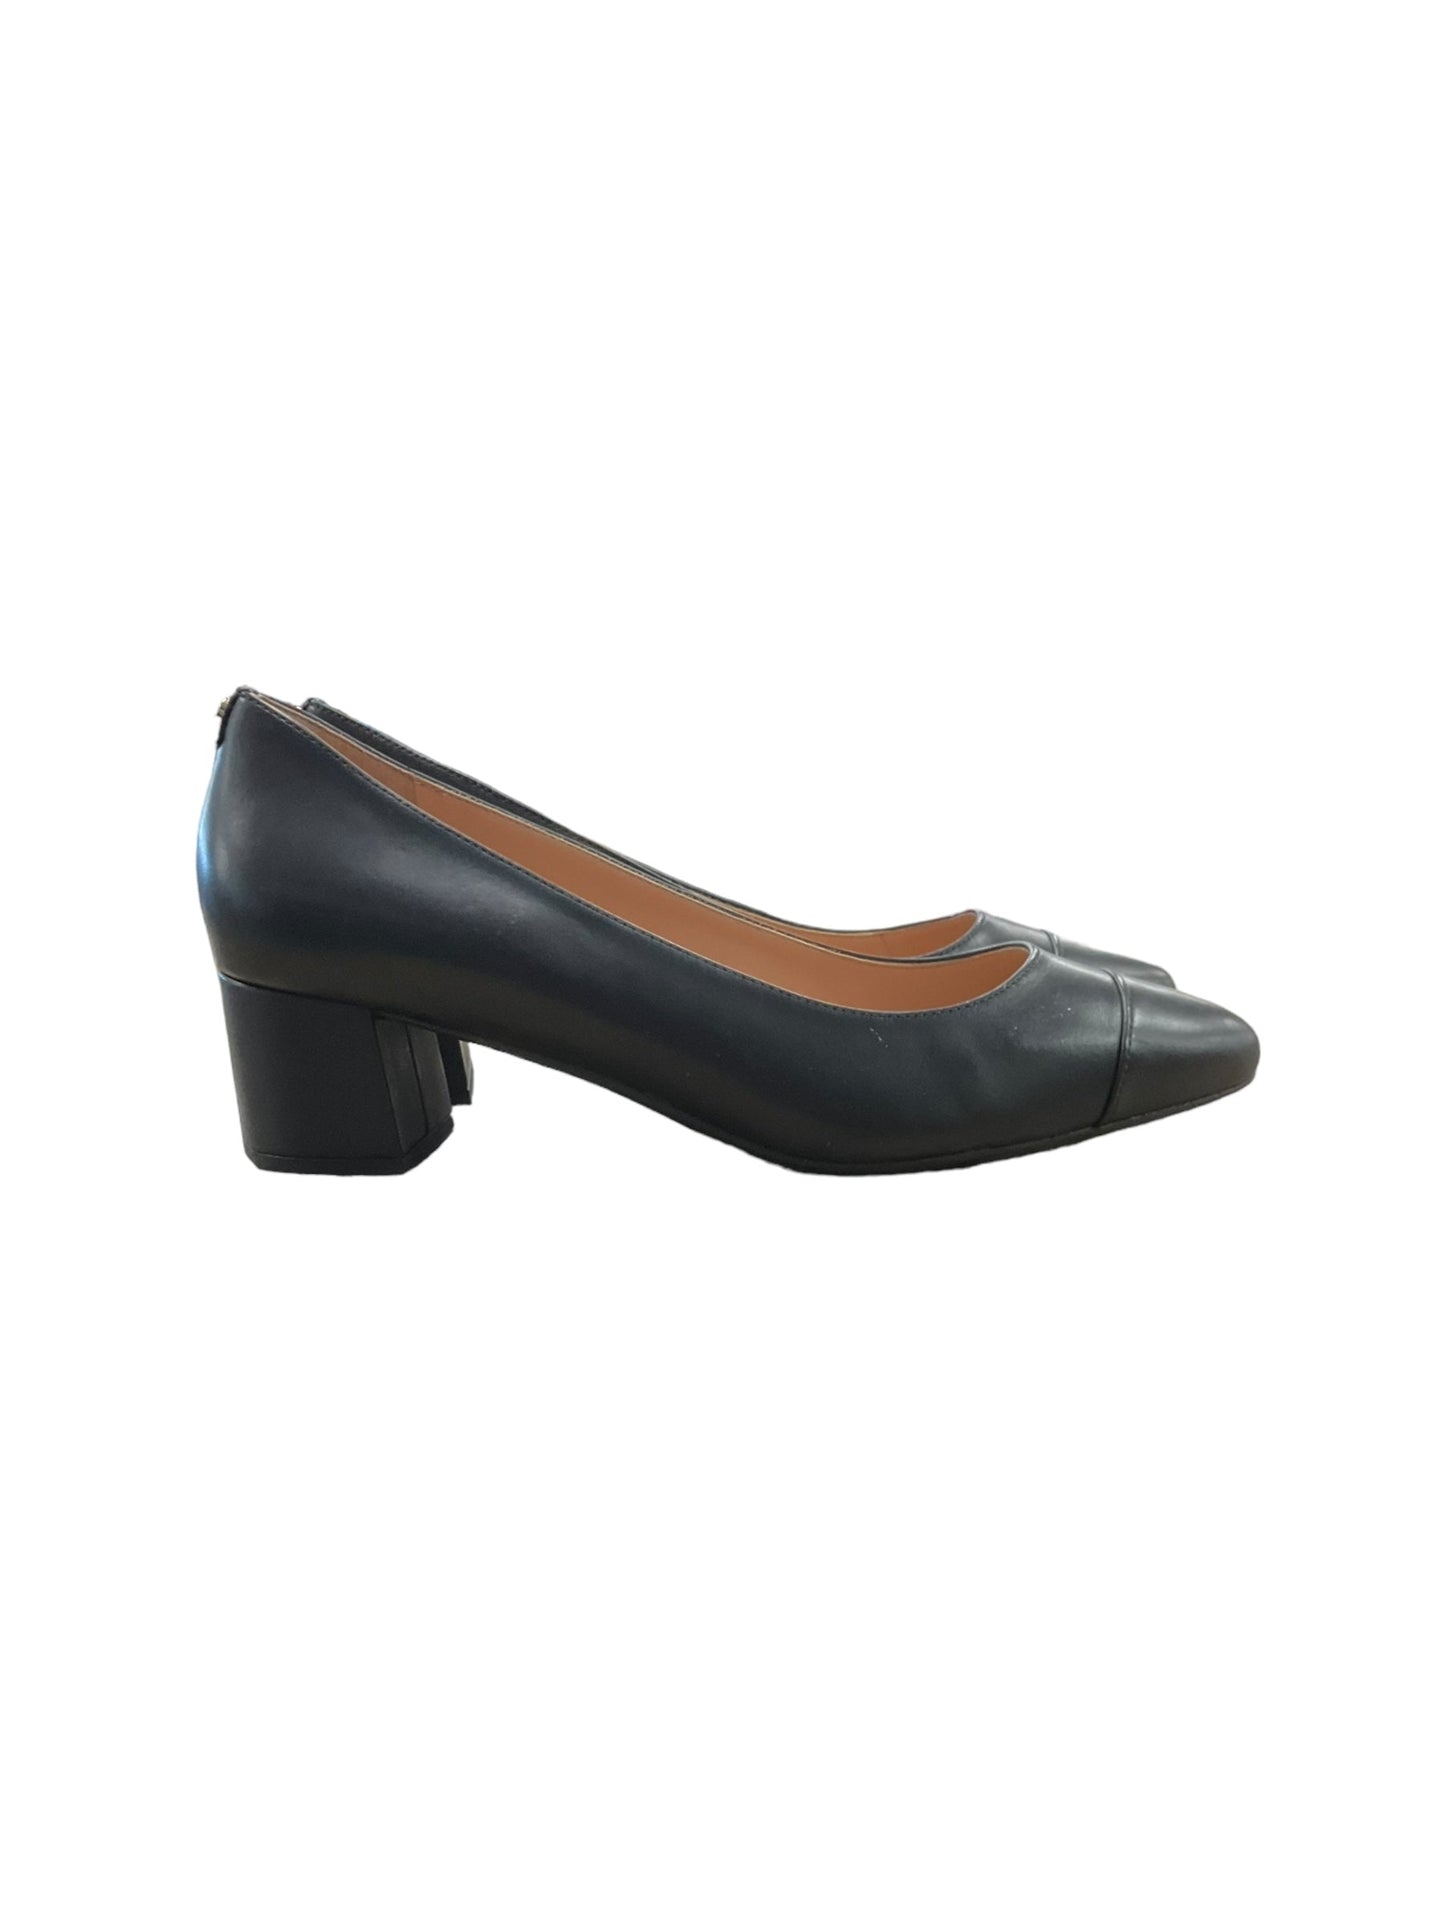 Black Shoes Heels Block Cole-haan, Size 9.5